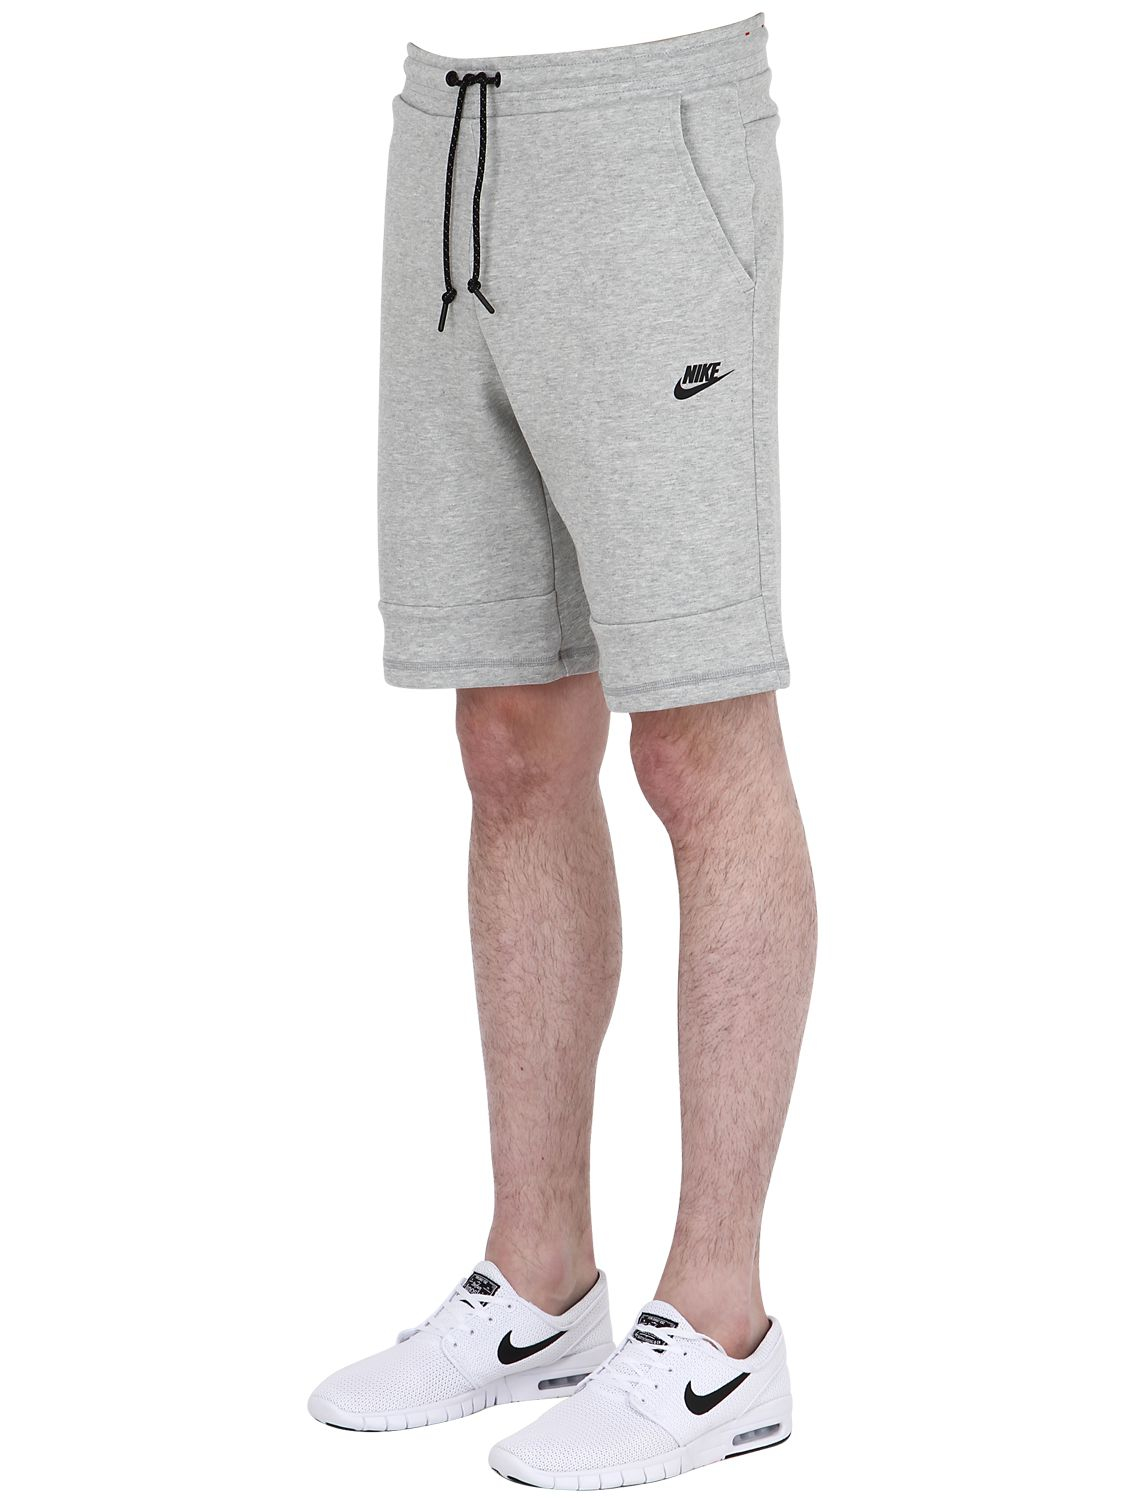 nike tracksuit shorts grey